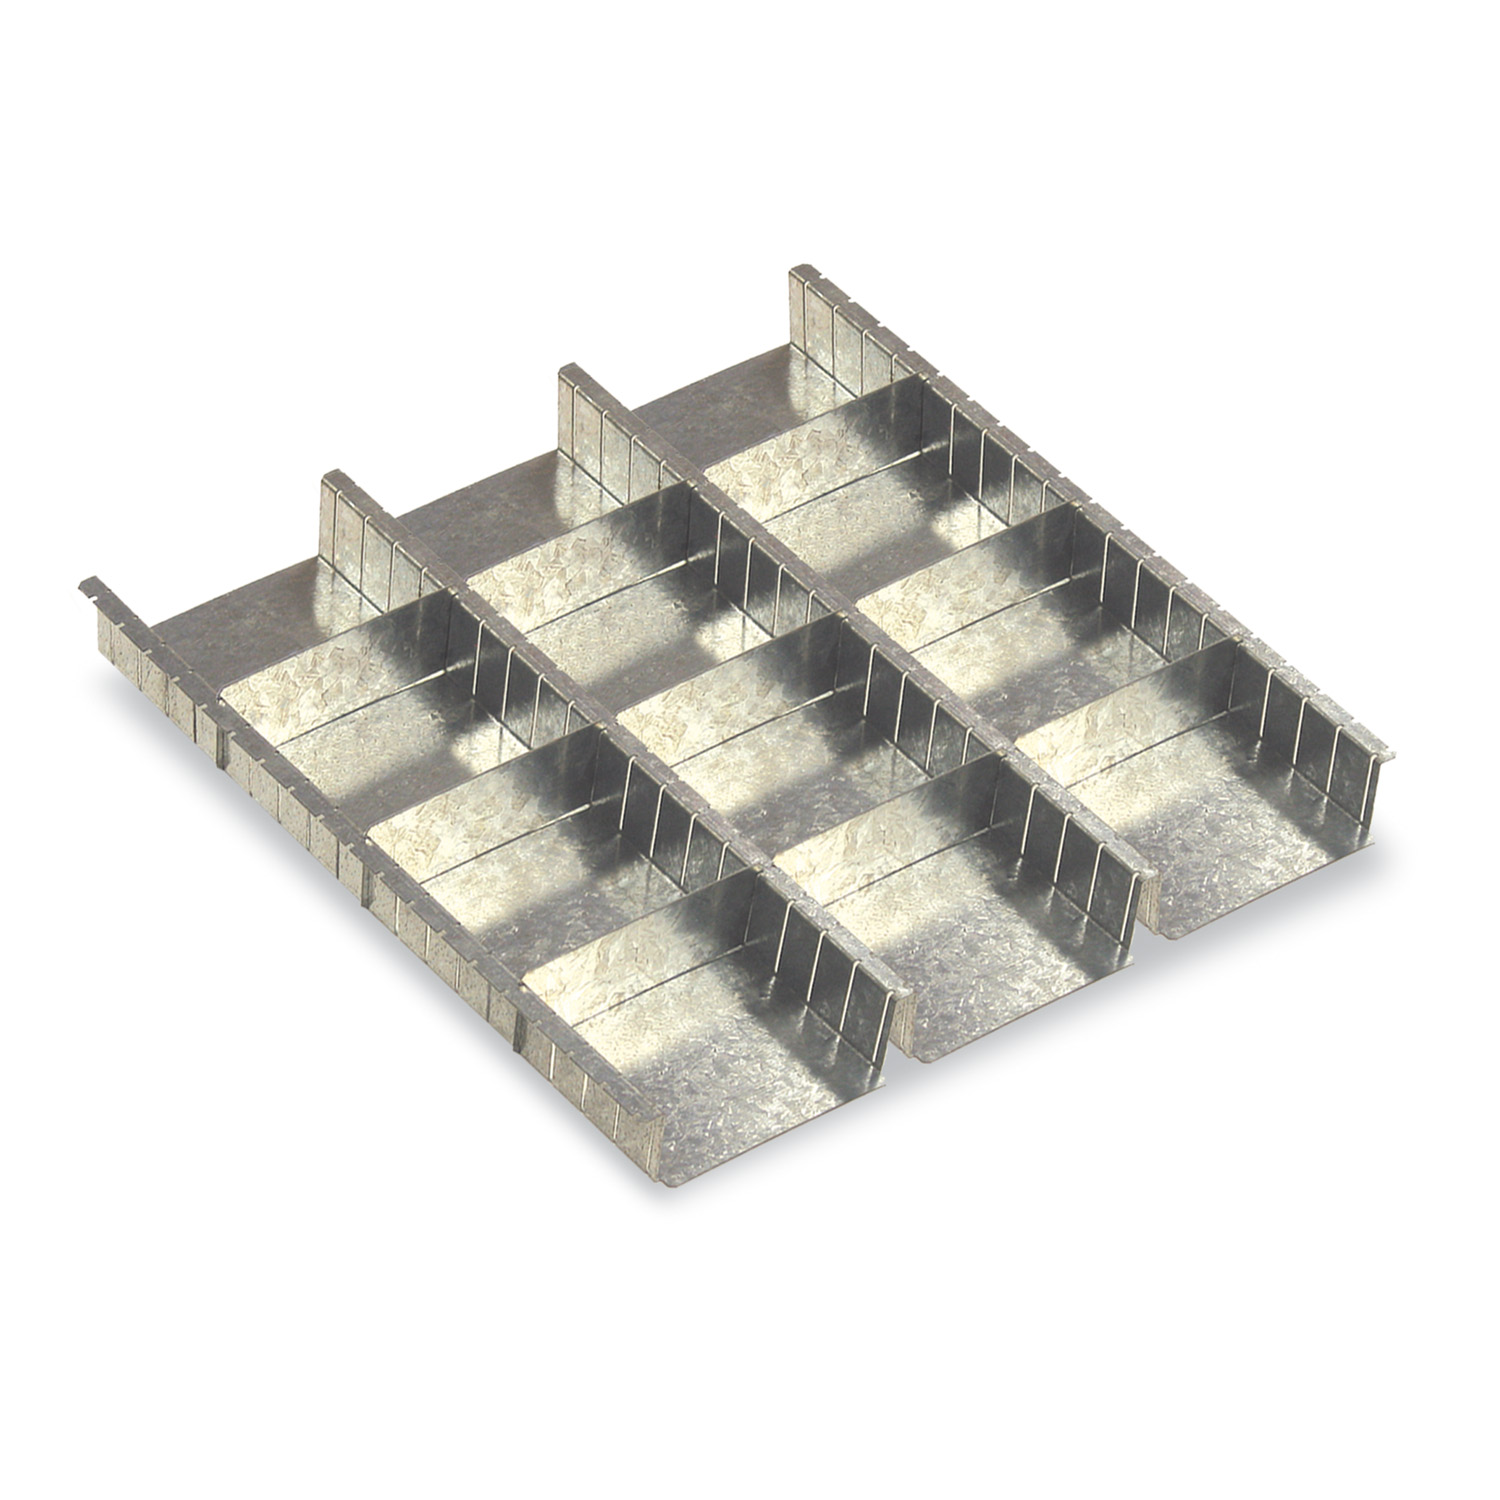 Los conjuntos de división para conjones sirven para dividir un cajón de profundidad 85mm de un armario de serie 600.  Contiene 3 bandejas y 9 tablillas. 